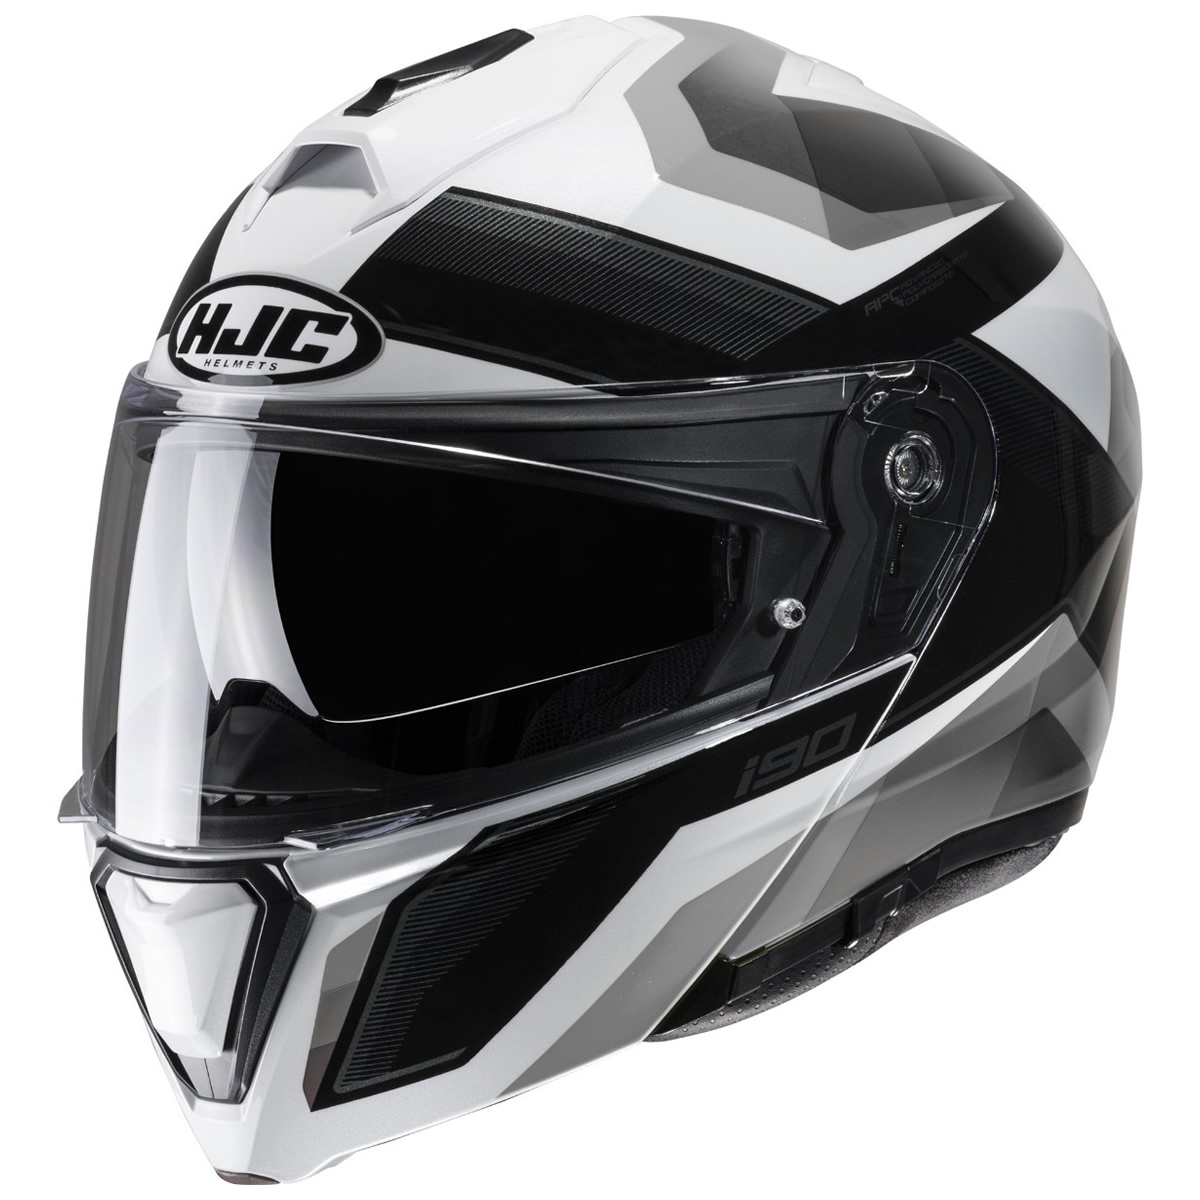 HJC Helm i90 Lark, weiß-schwarz-grau